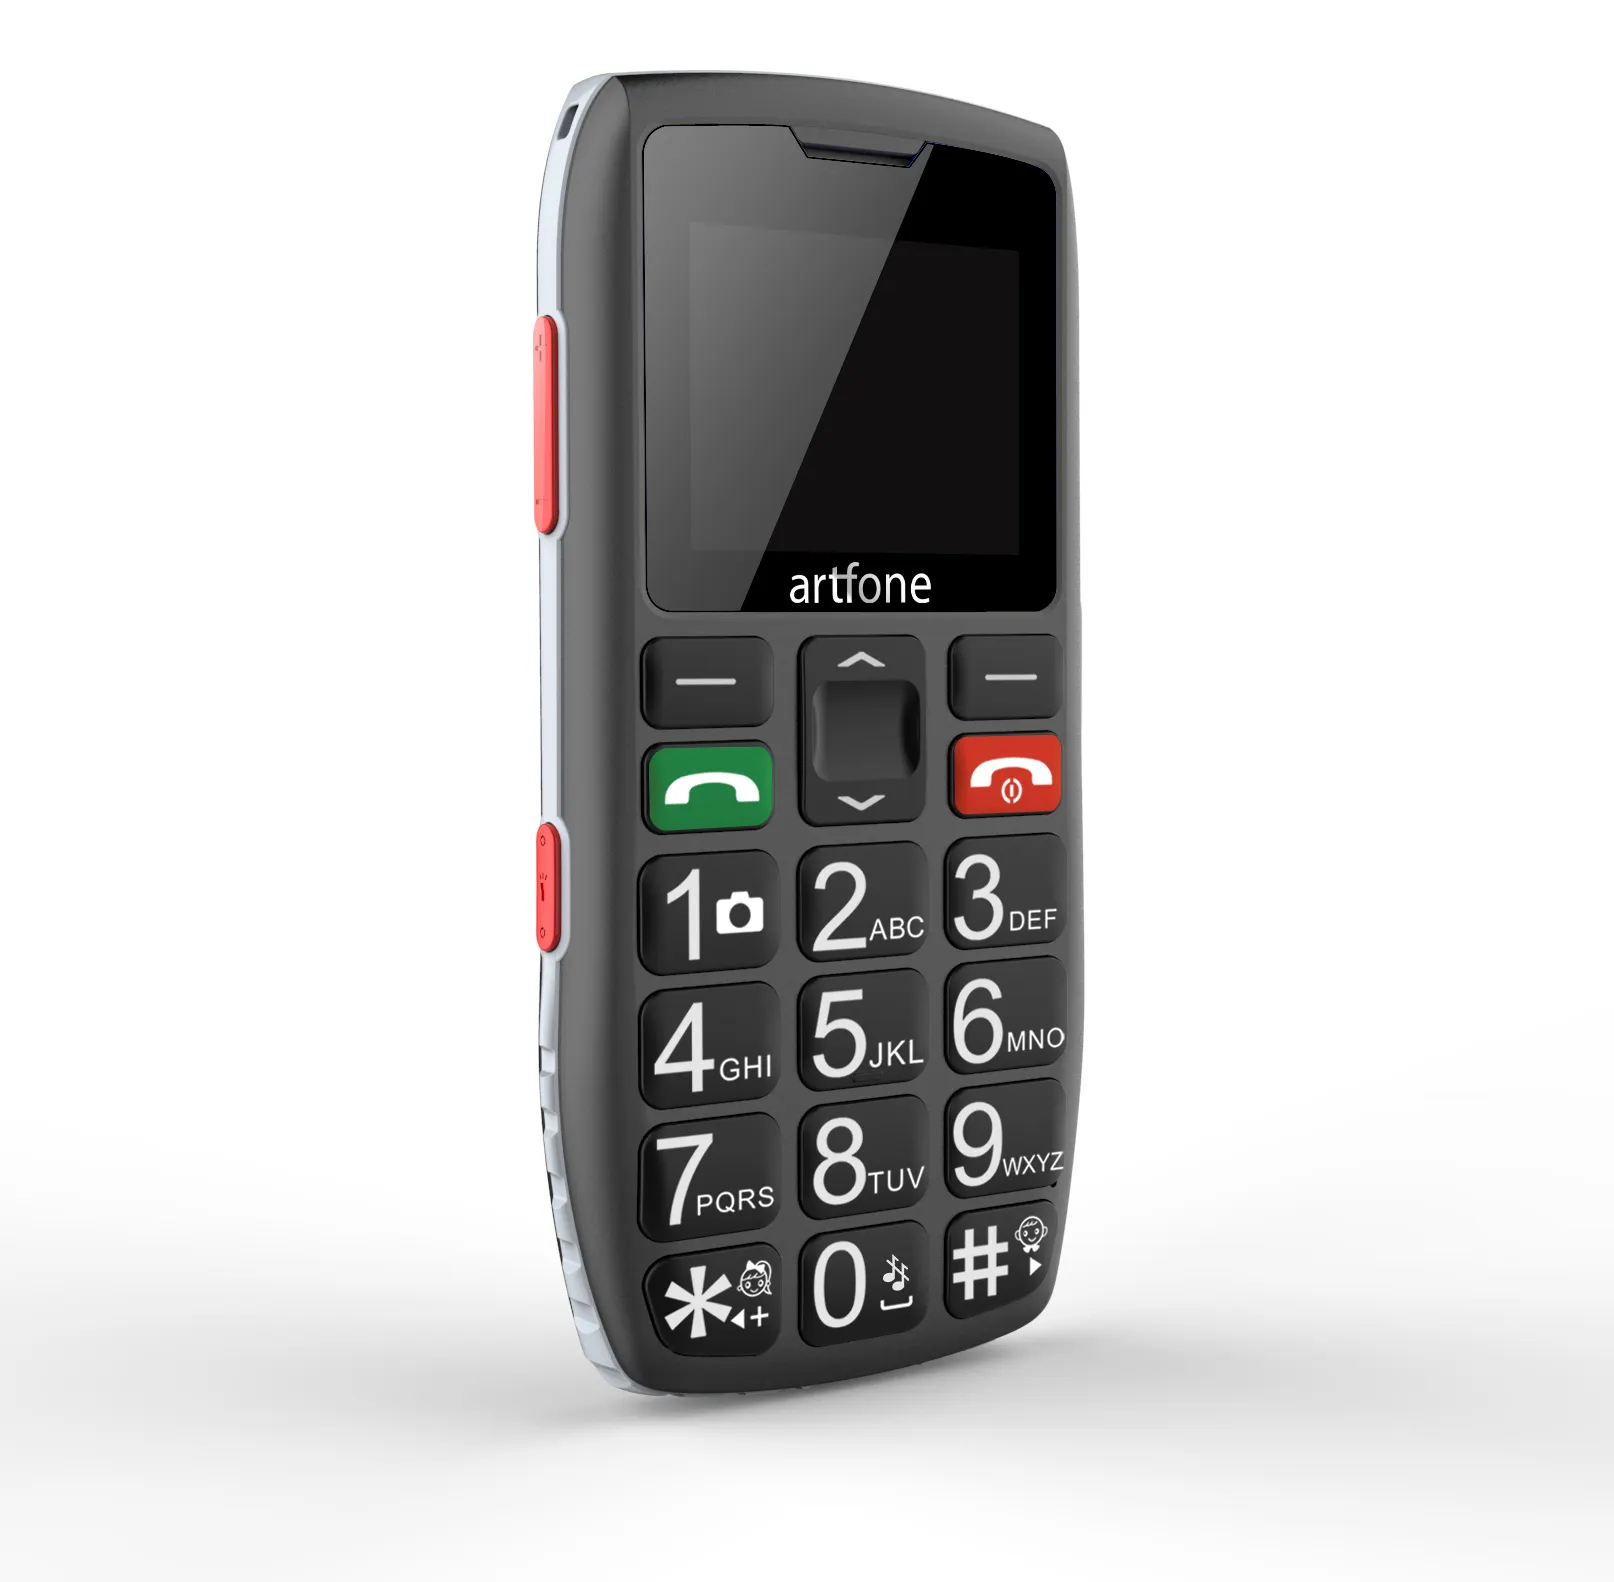 Artfone fabrika C1 bar telefon 2g cep telefonları yaşlı cep telefonları büyükler için büyük düğme özellik telefon